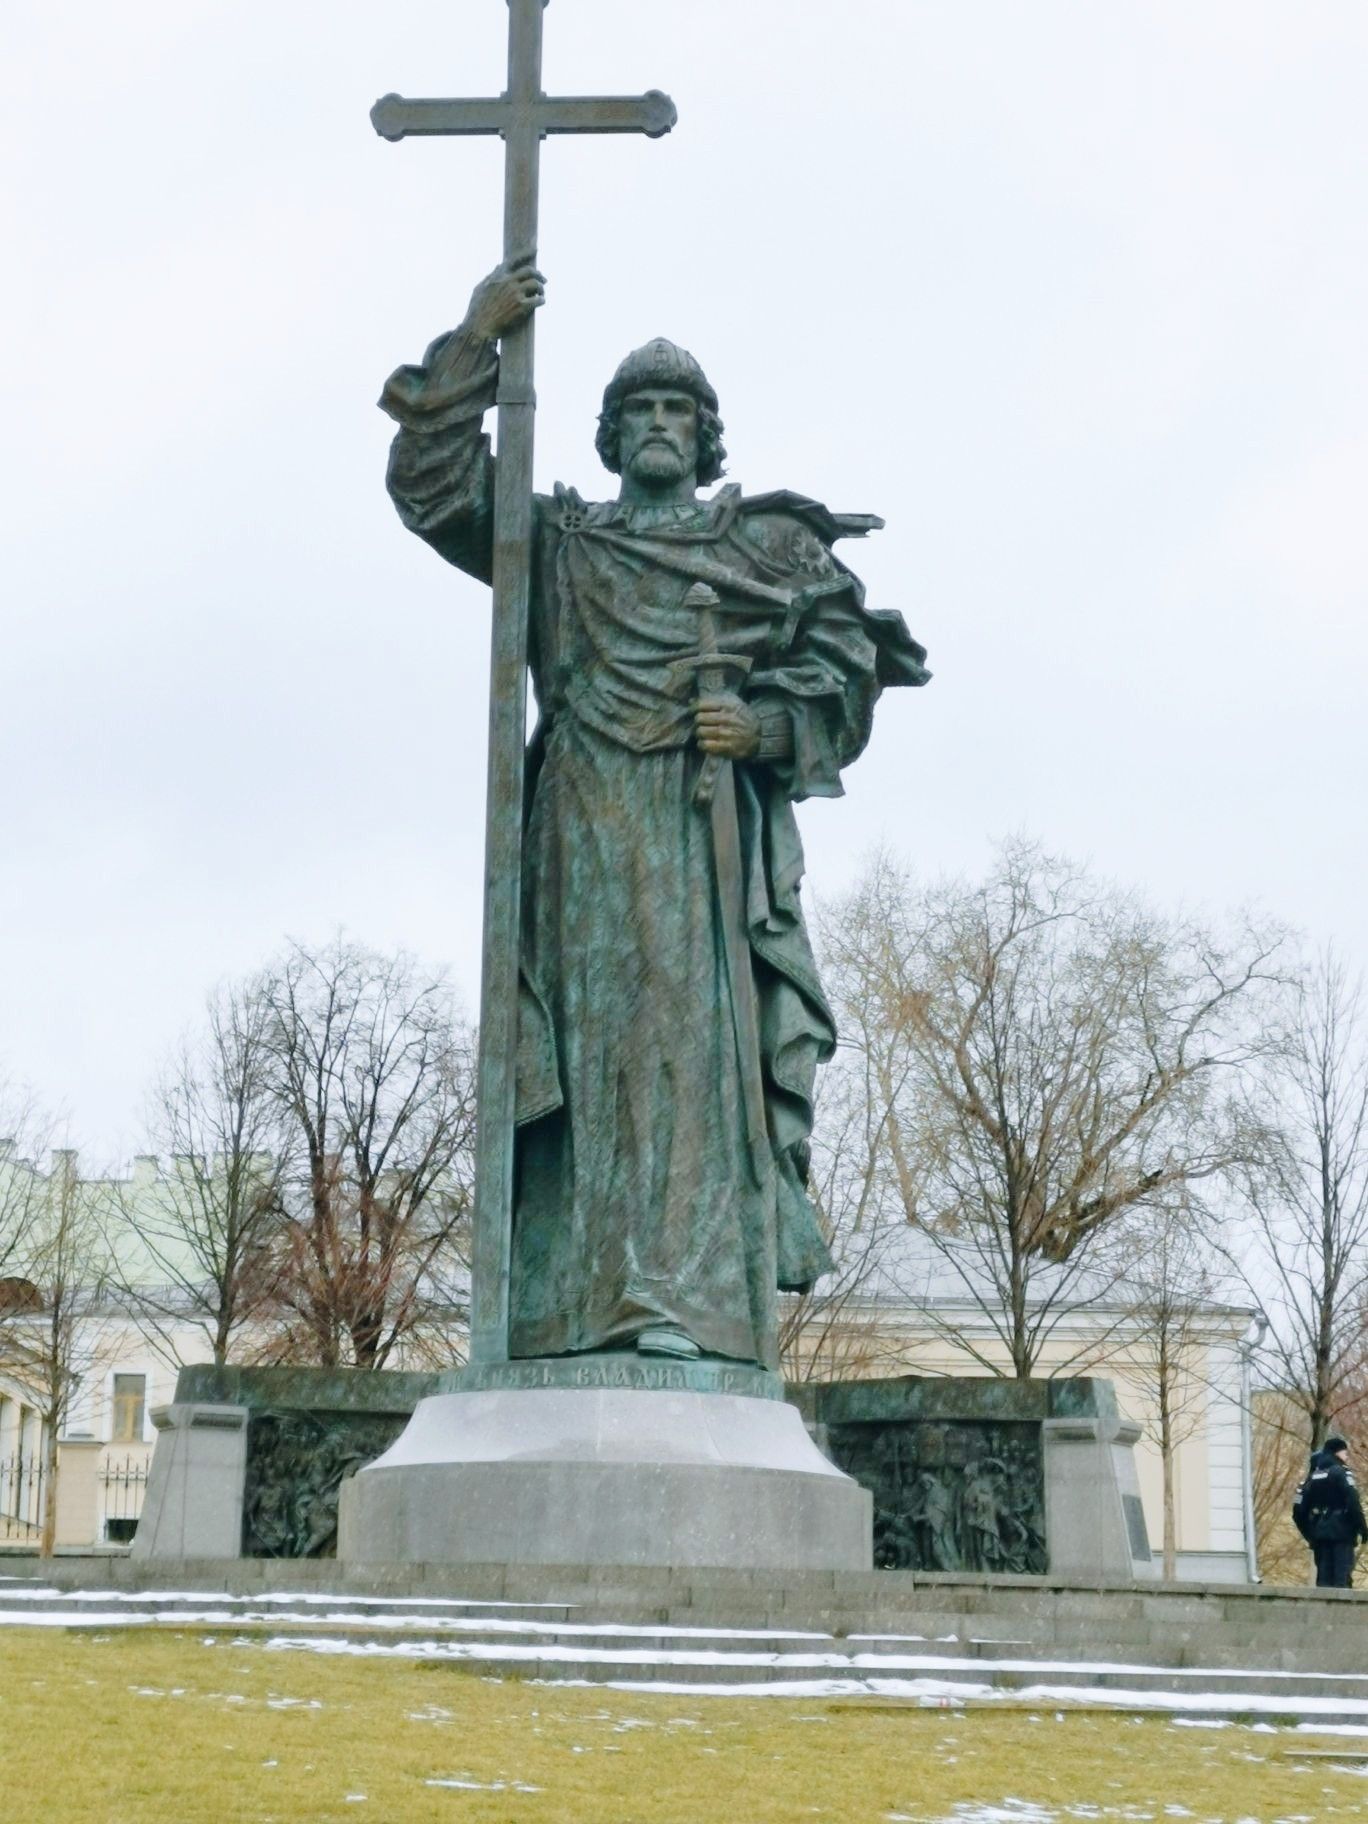 我在这里  弗拉基米尔·莫诺马赫大公纪念碑   弗拉基米尔这个名字在俄罗斯可是有点意思 虽然他是一个